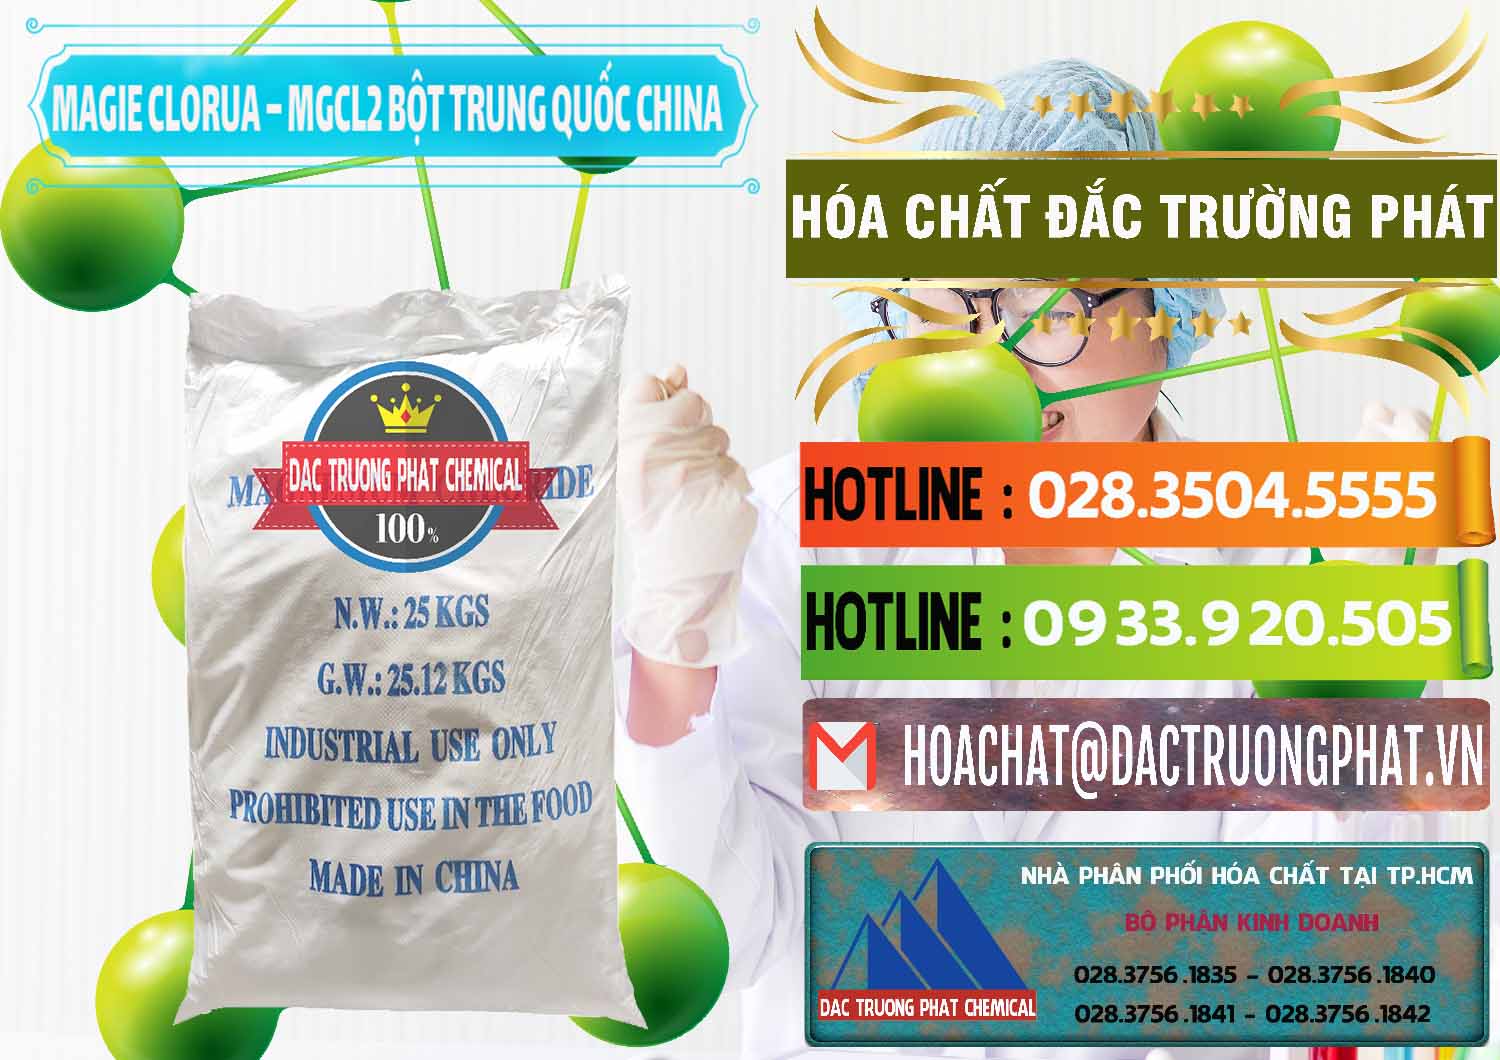 Cty bán & cung cấp Magie Clorua – MGCL2 96% Dạng Bột Bao Chữ Xanh Trung Quốc China - 0207 - Cty chuyên bán & phân phối hóa chất tại TP.HCM - cungcaphoachat.com.vn